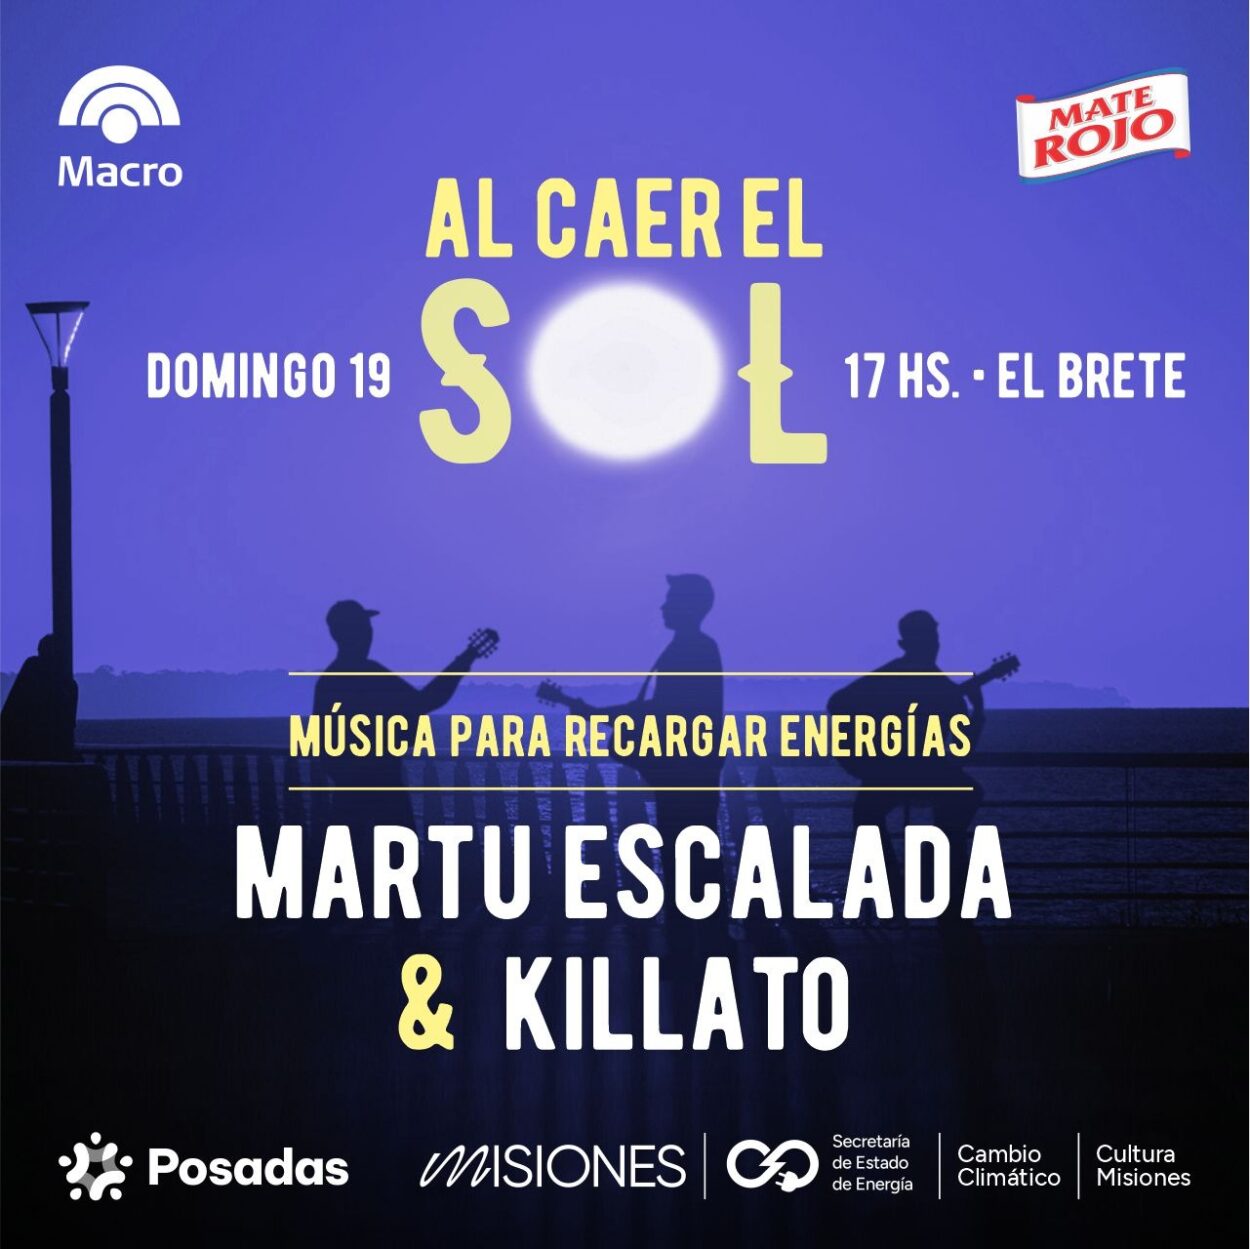 Martu Escalada y Killato: rock y música urbana este domingo “Al caer el sol en El Brete” imagen-16